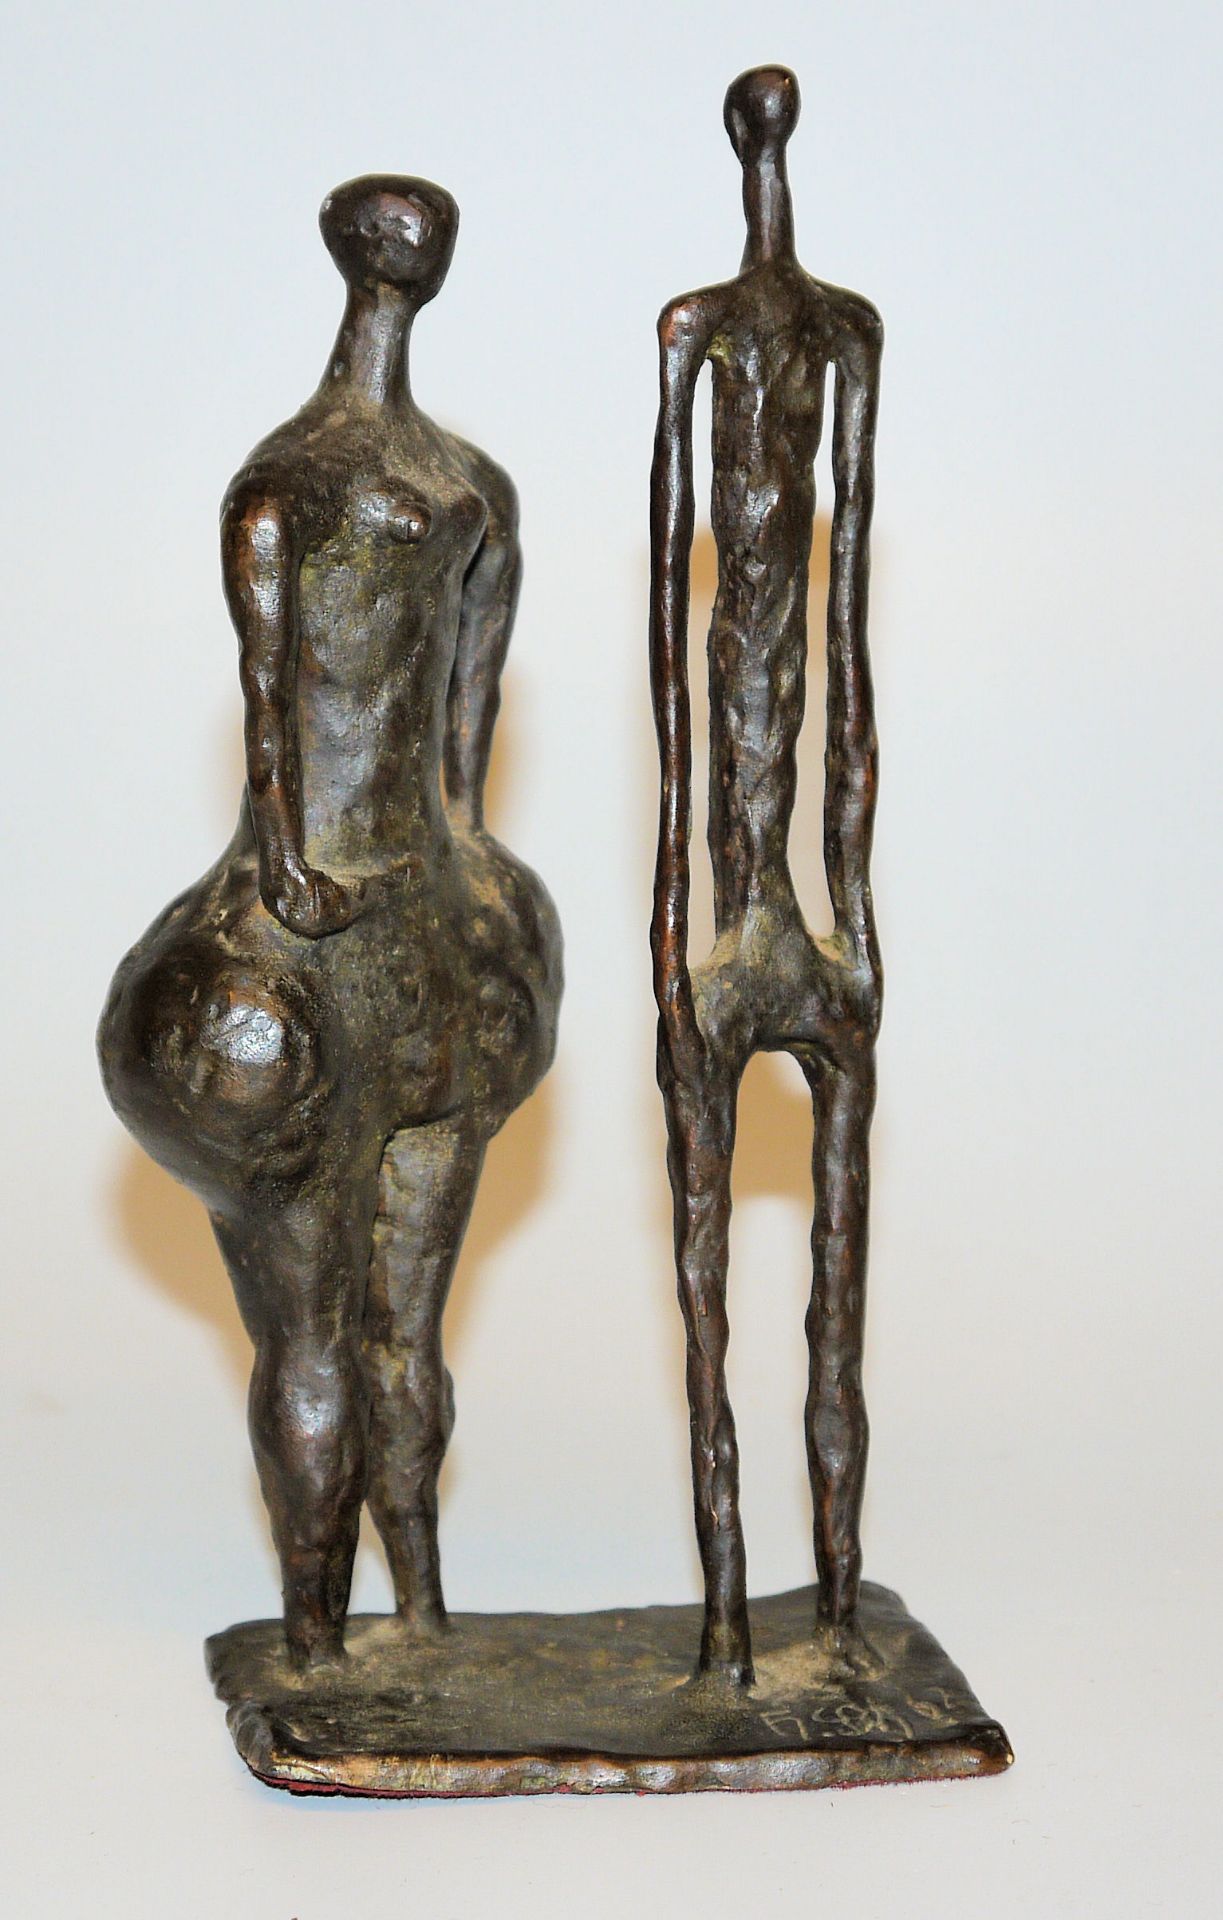 Horst Schöneich, Voluptuous Woman and Thin Man, bronze sculpture from 1962